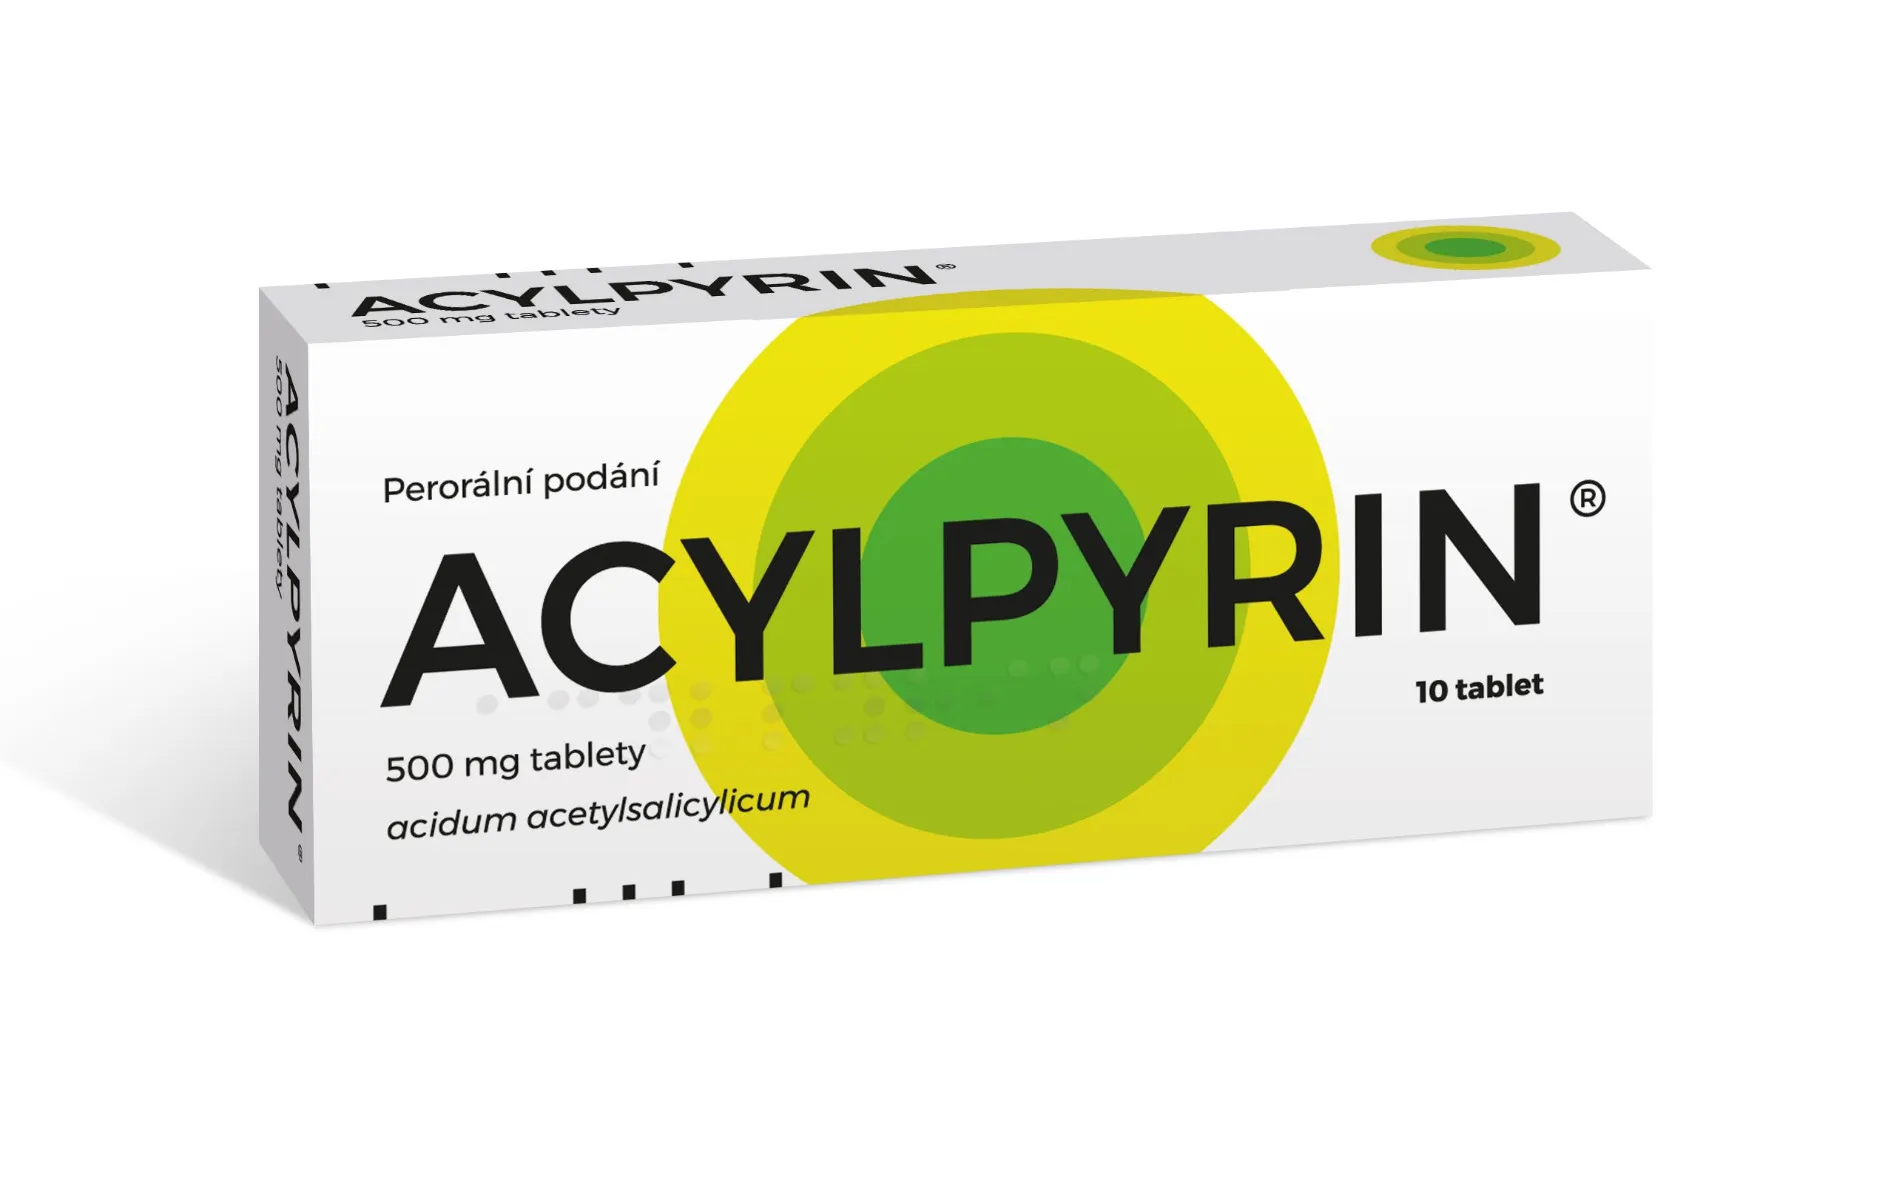 Acylpyrin